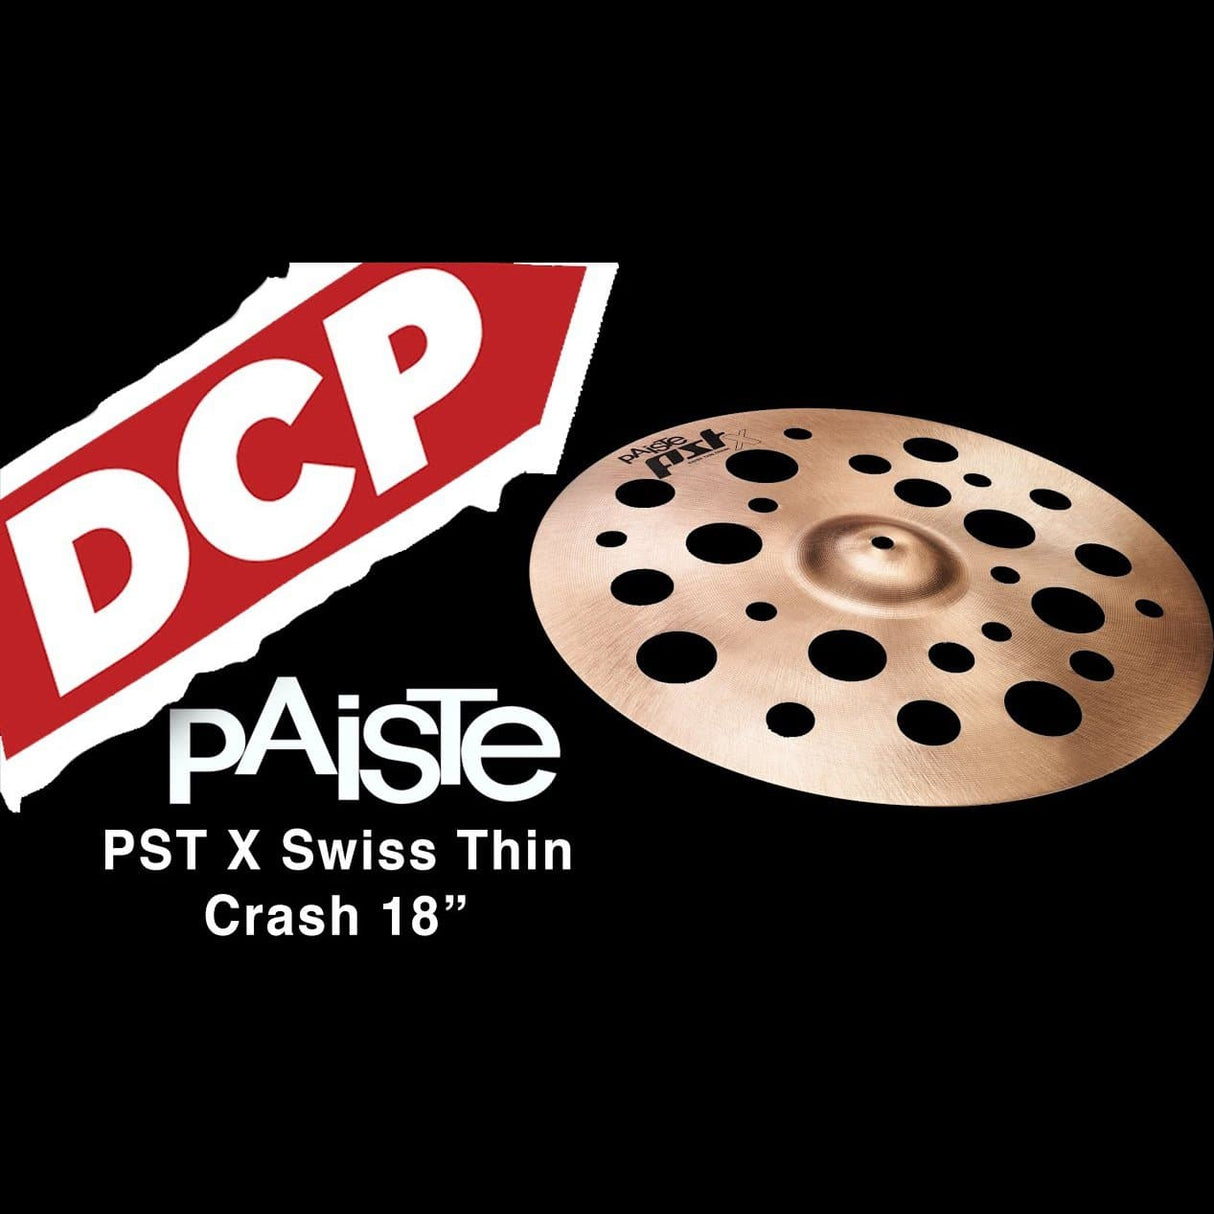 Paiste PSTX Swiss Thin Crash Cymbal 18"